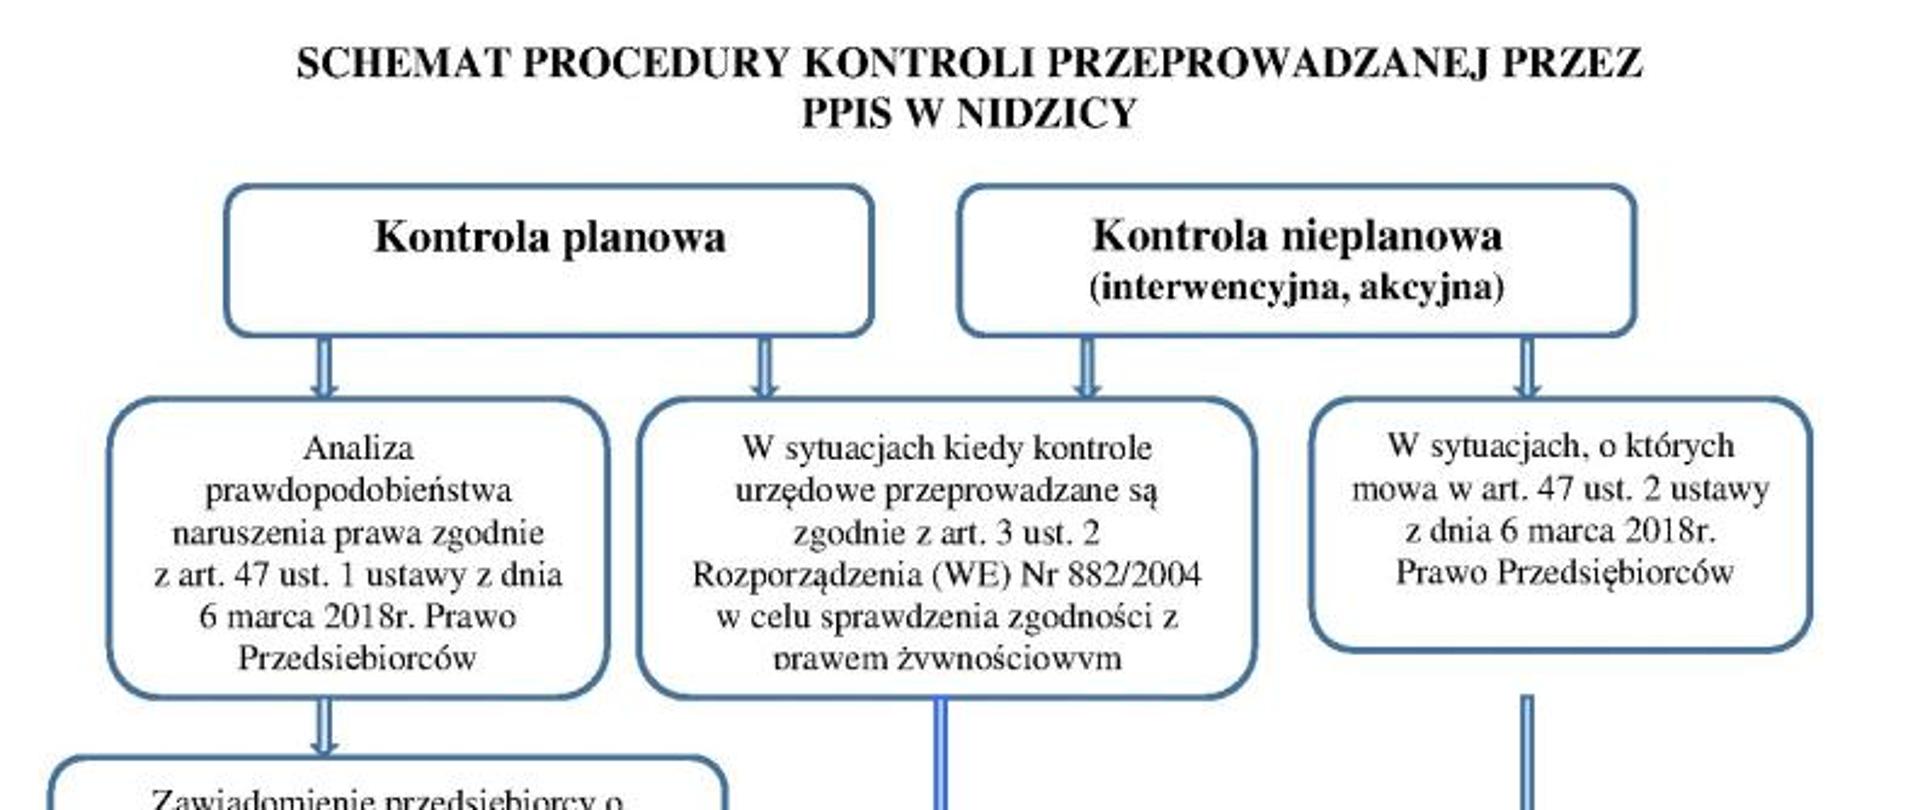 Schemat procedury kontroli przeprowadzanej przez PPIS w Nidzicy